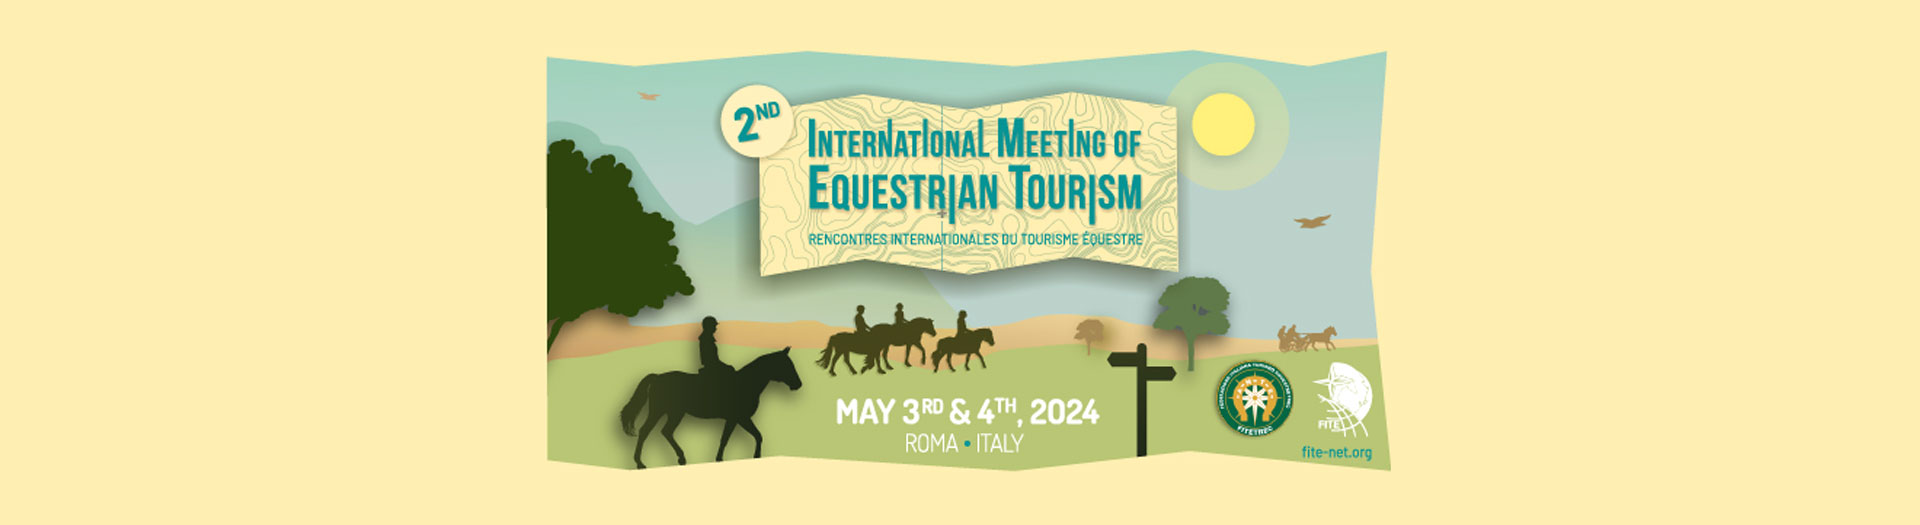 Les rencontres Internationales du Tourisme Équestre